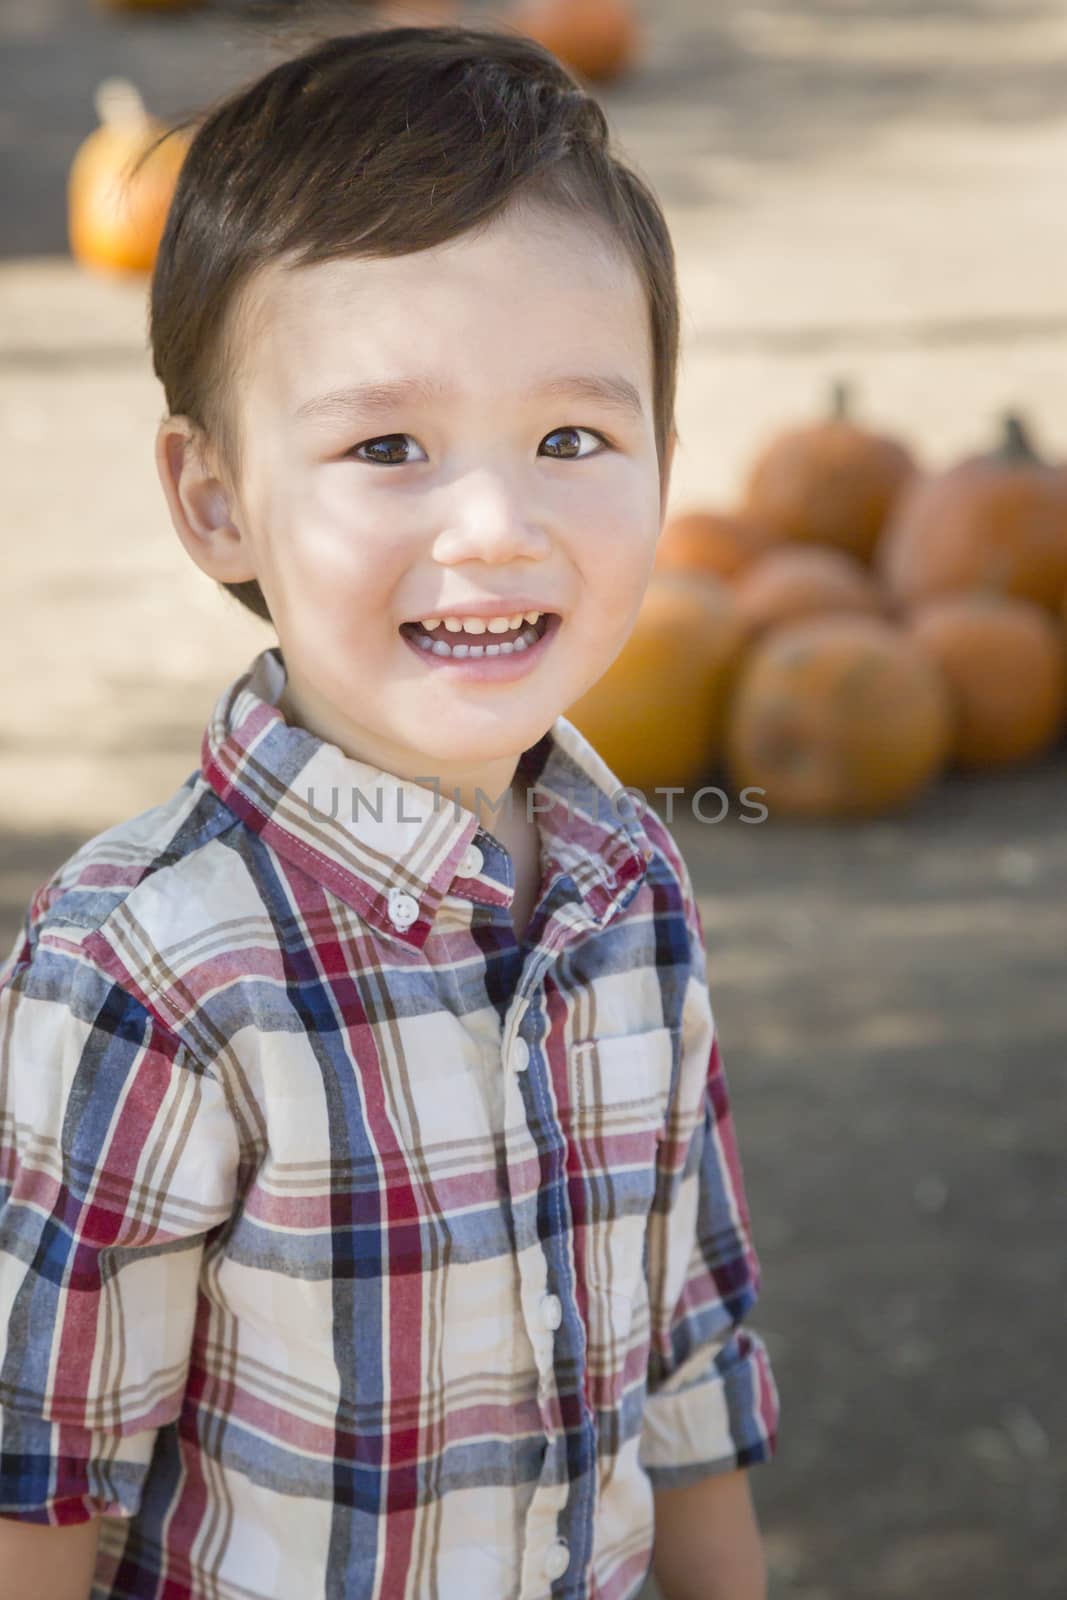 Cute Mixed Race Young Boy Having Fun at the Pumpkin Patch.